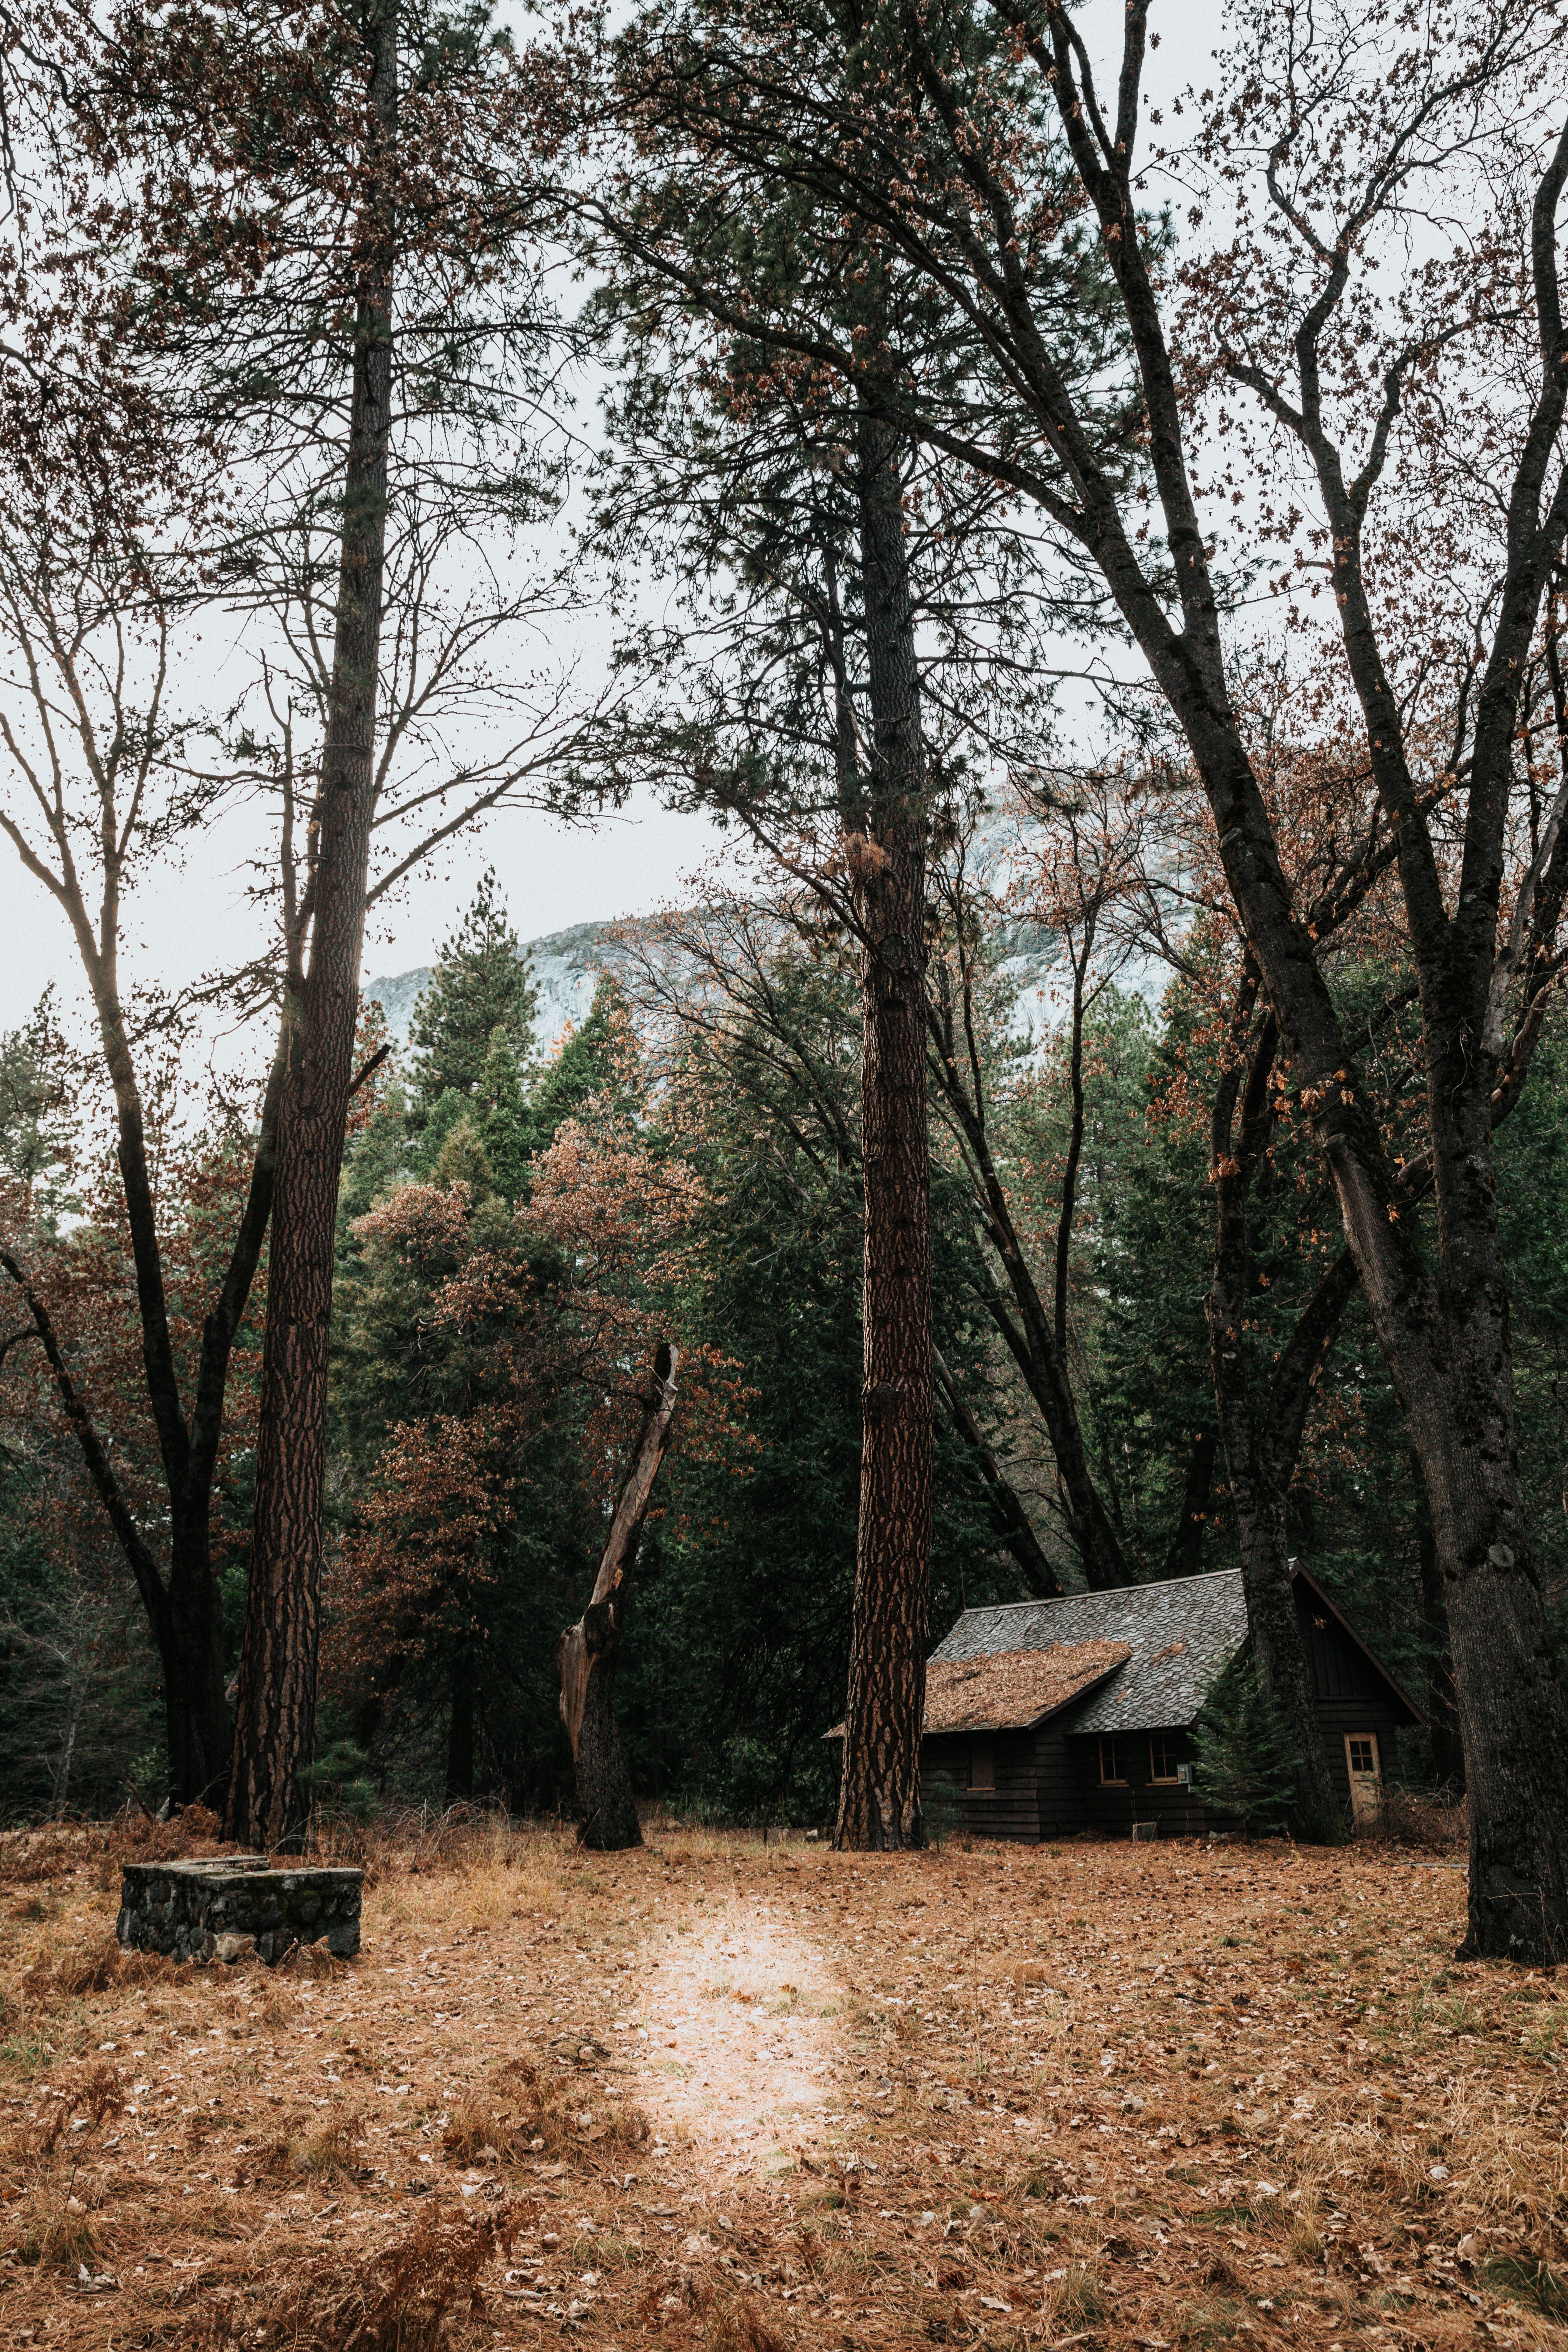 Lukas fand Unterschlupf in einer Hütte im Wald. | Quelle: Unsplash